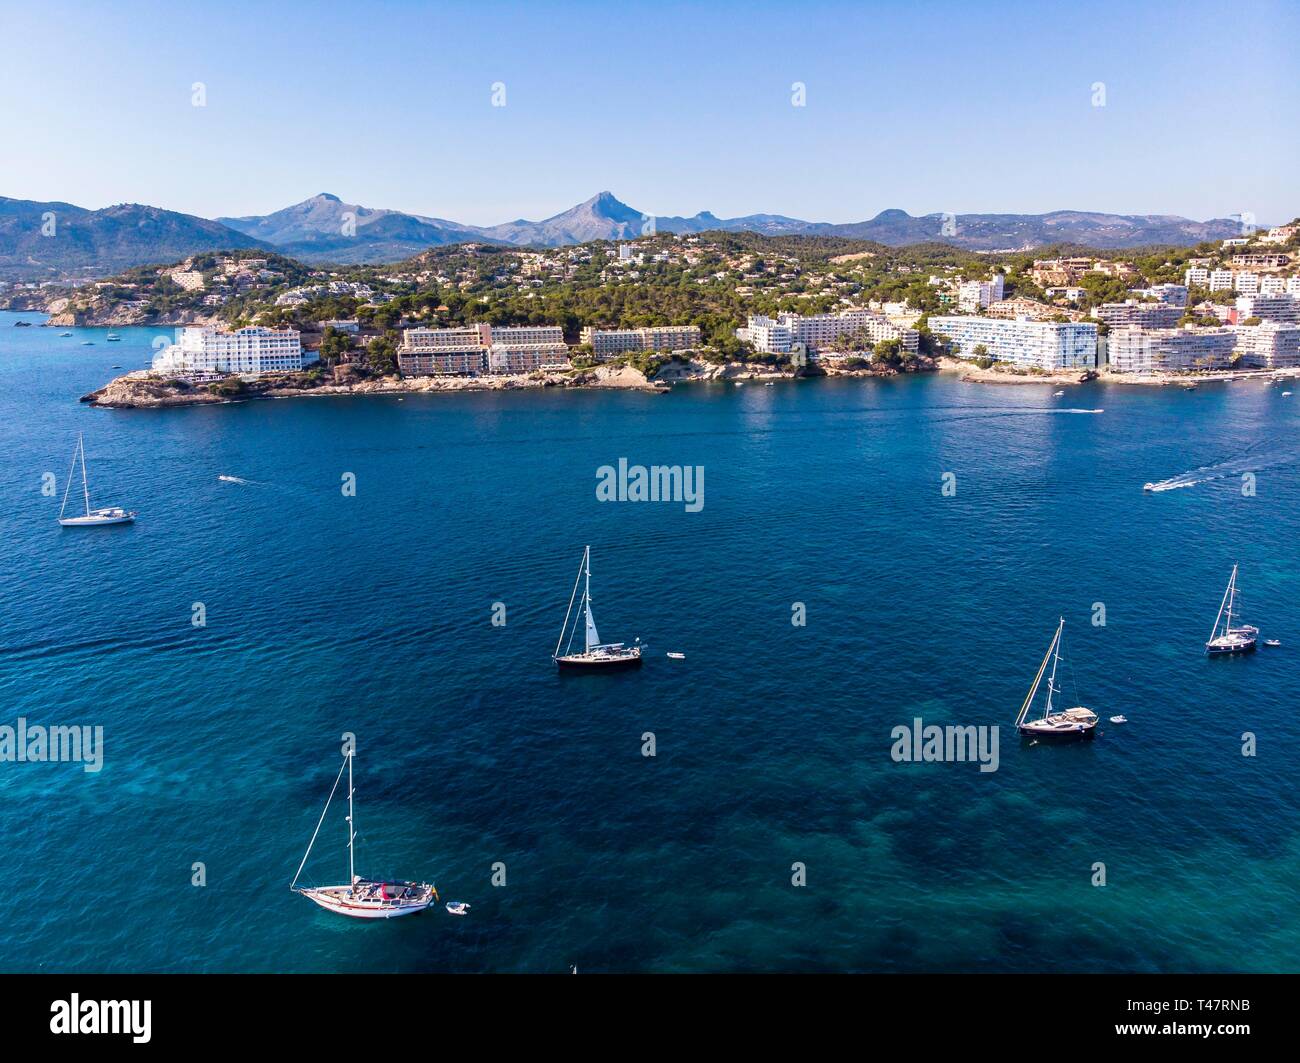 Foto aérea, vista de la bahía de Santa Ponca con yates a vela, Mallorca, Islas Baleares, España Foto de stock